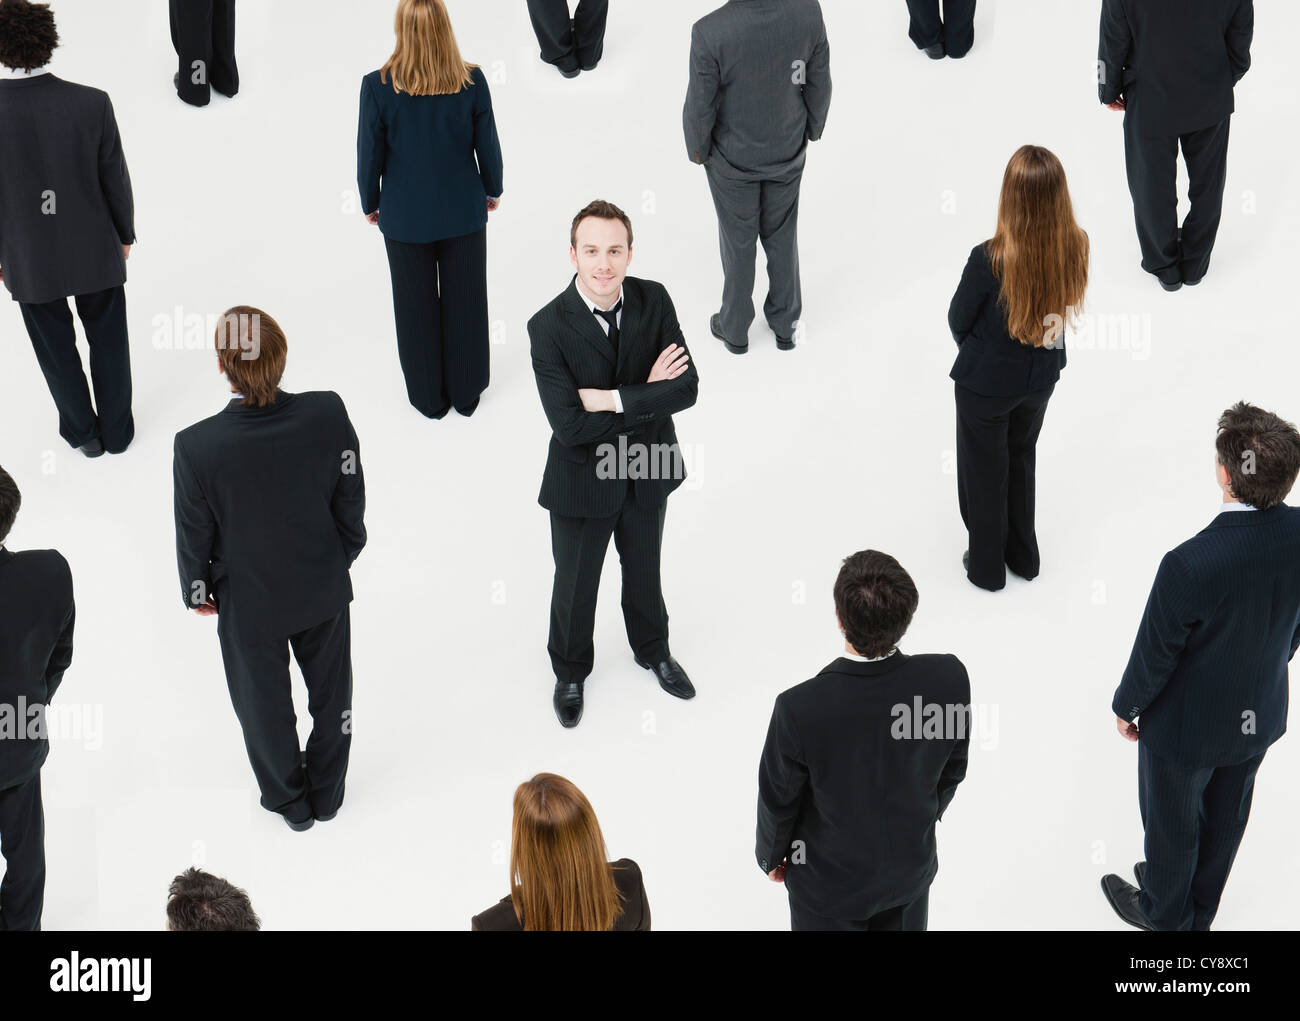 Geschäftsmann mit Arme gekreuzt stehen inmitten von anonym gekleidete Geschäftsleute Stockfoto